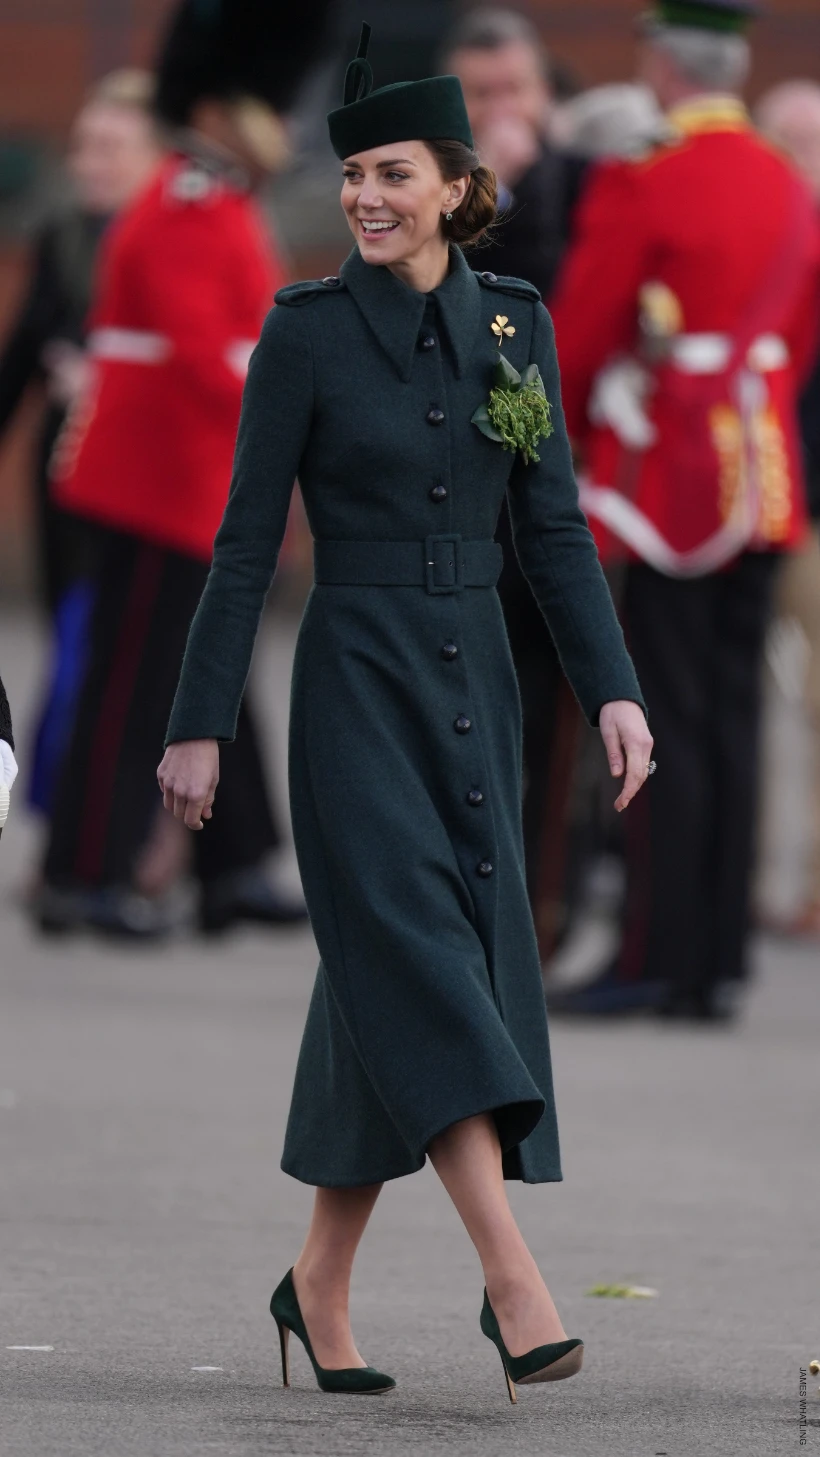 Kate Middleton in Alexander McQueen Coat, Black Pumps in Bradford, UK